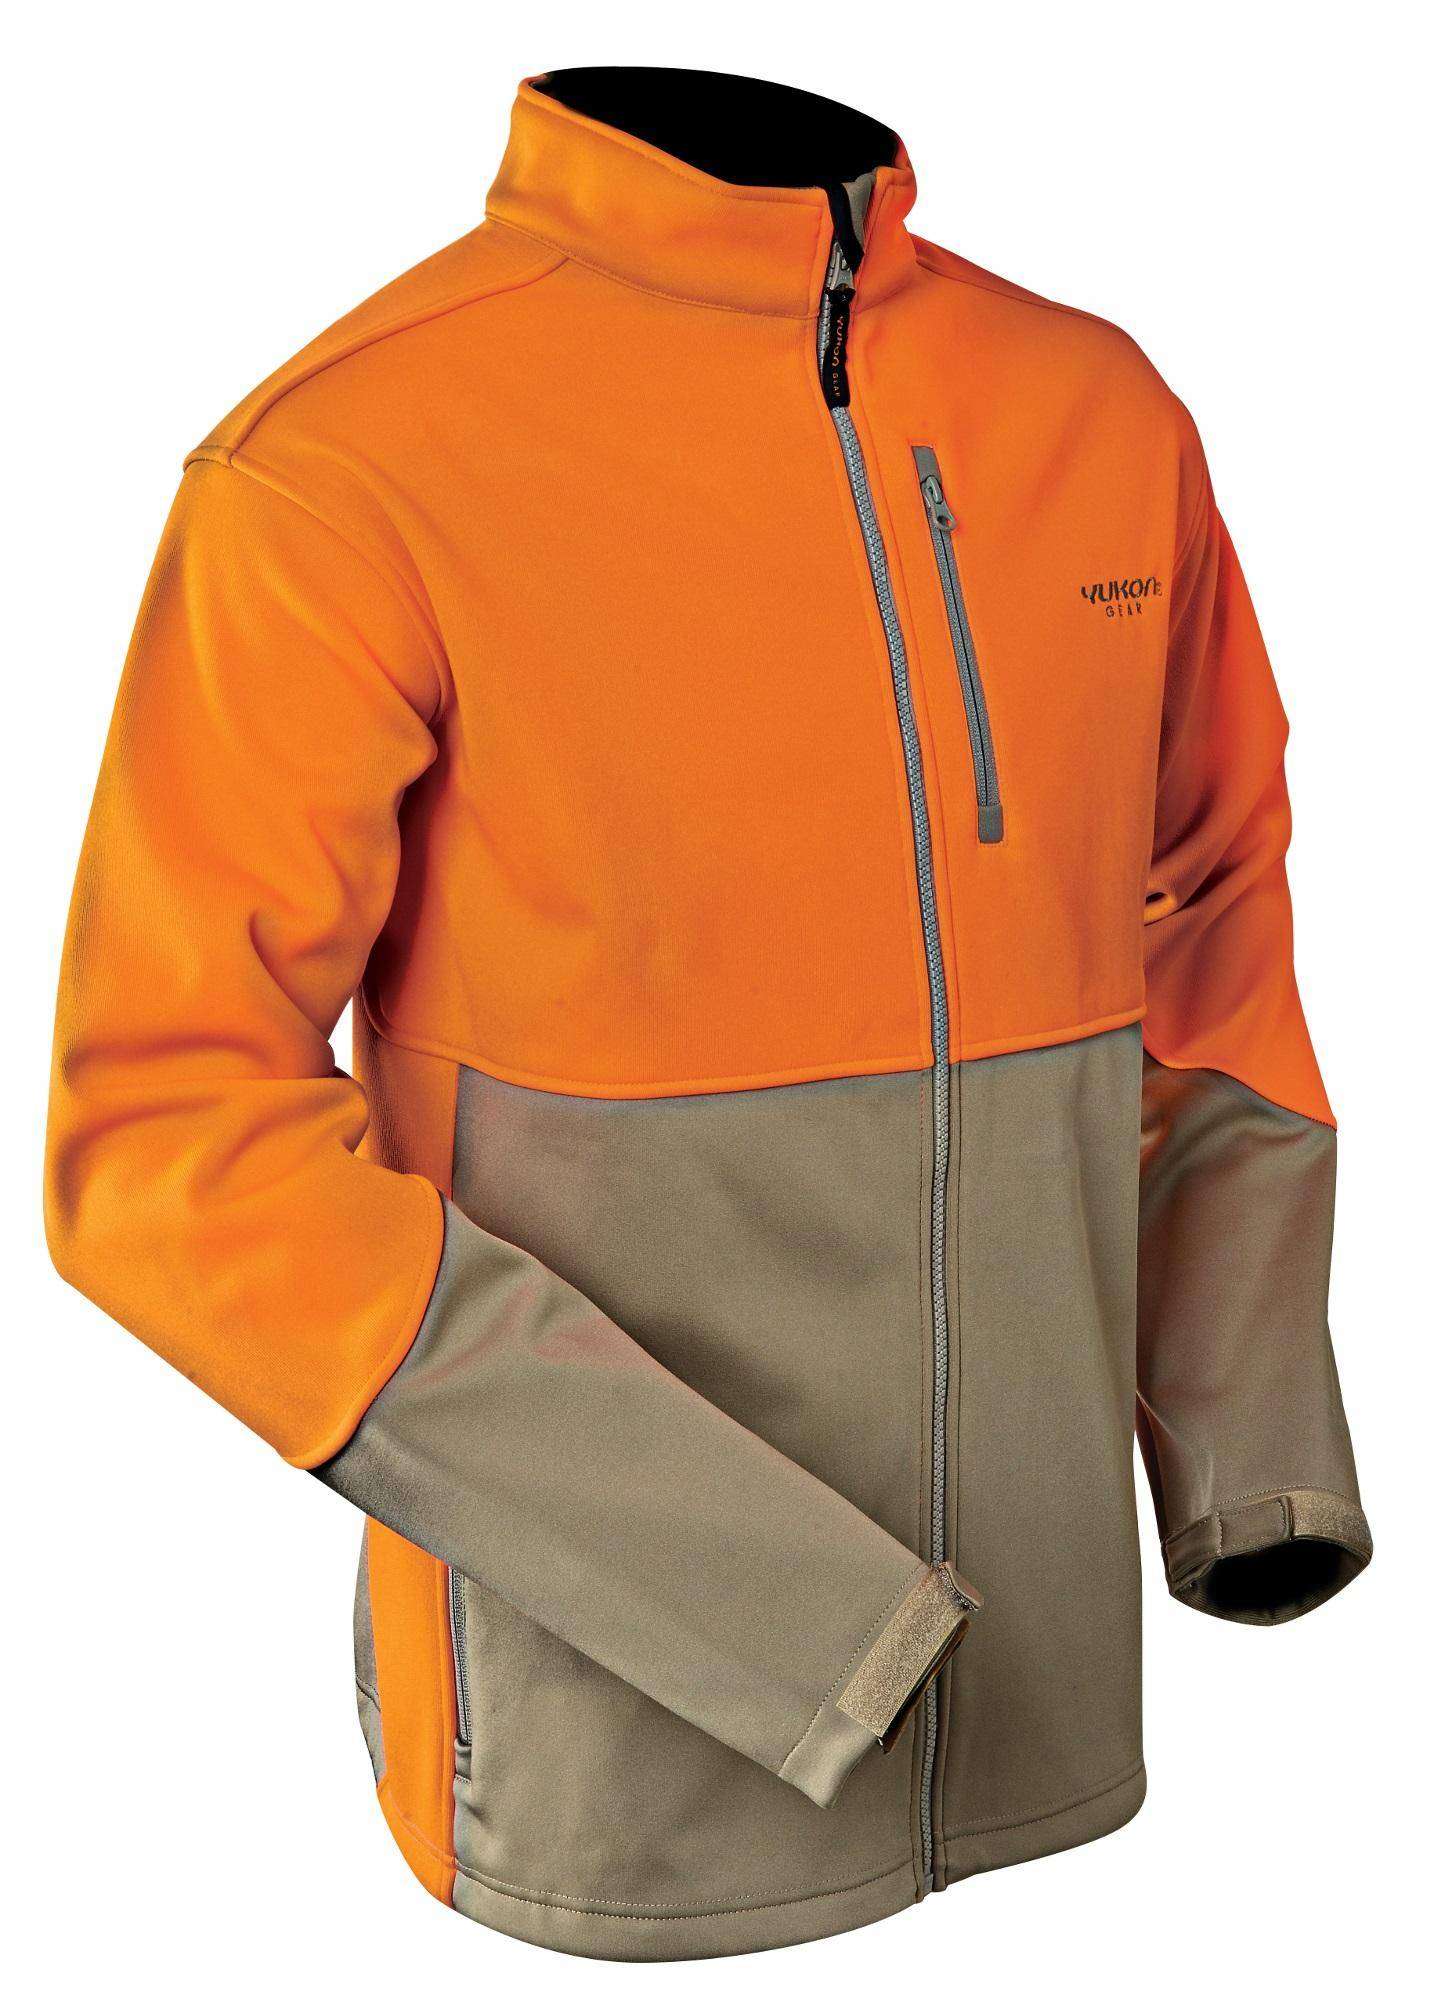 Old Harbor Outfitters OHO Softshell Orange Black Jacket Fishing XXL $179 Retail 